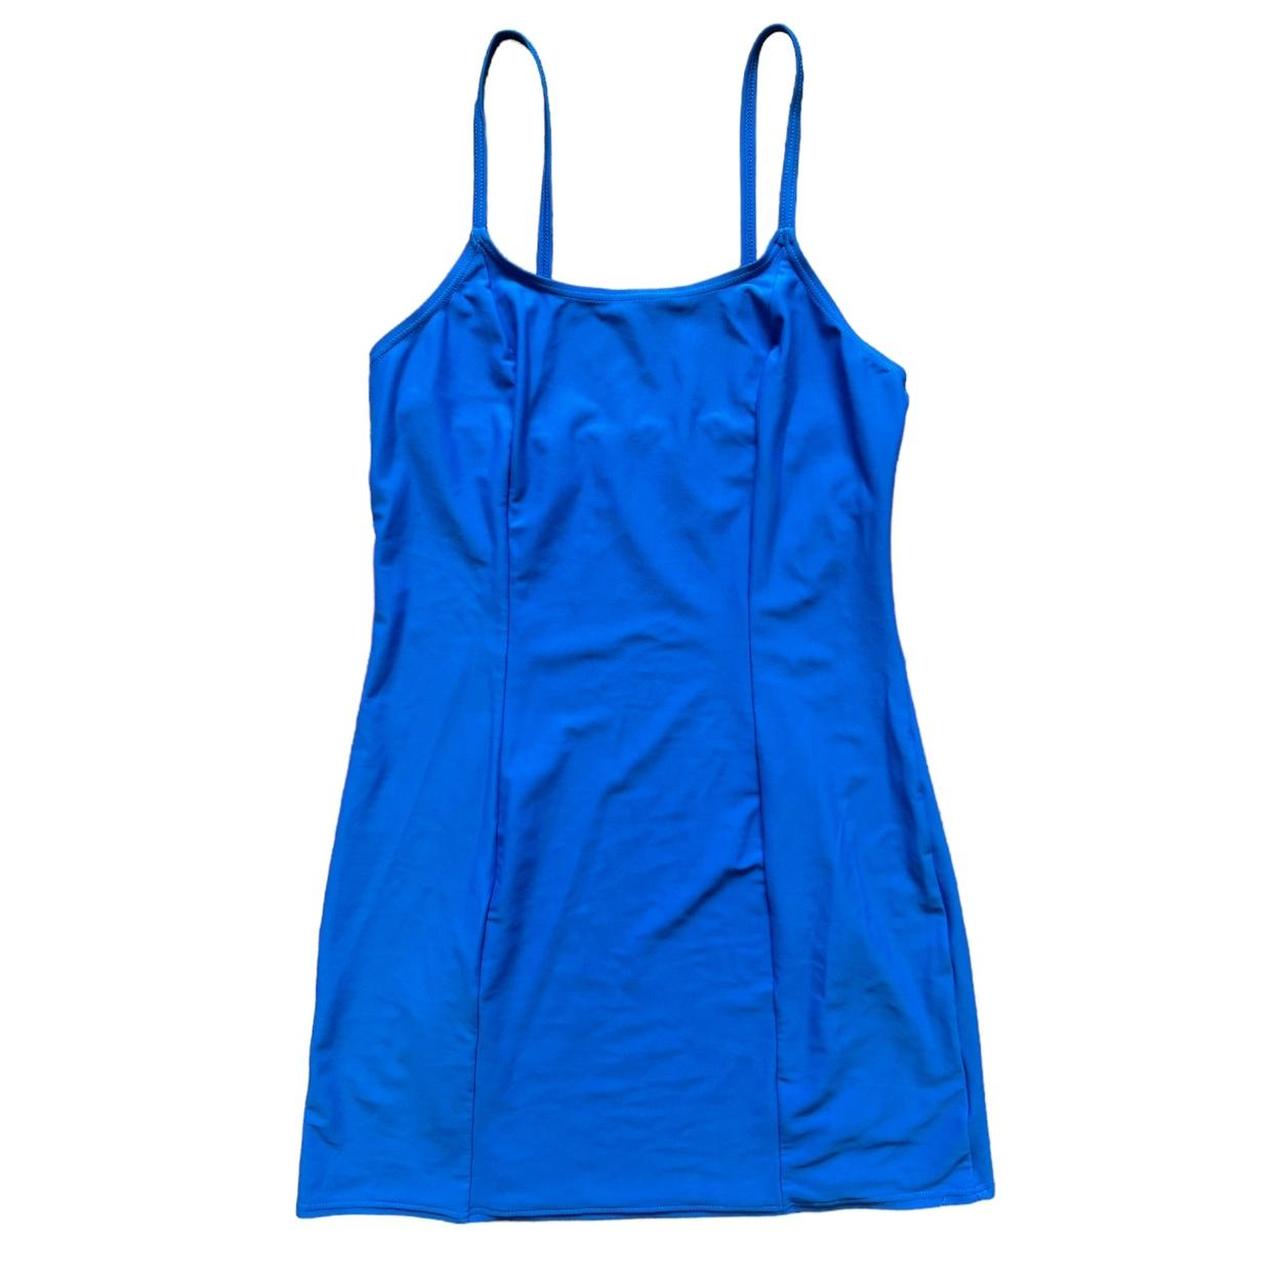 Vintage y2k blue stretchy mini summer dress Size... - Depop